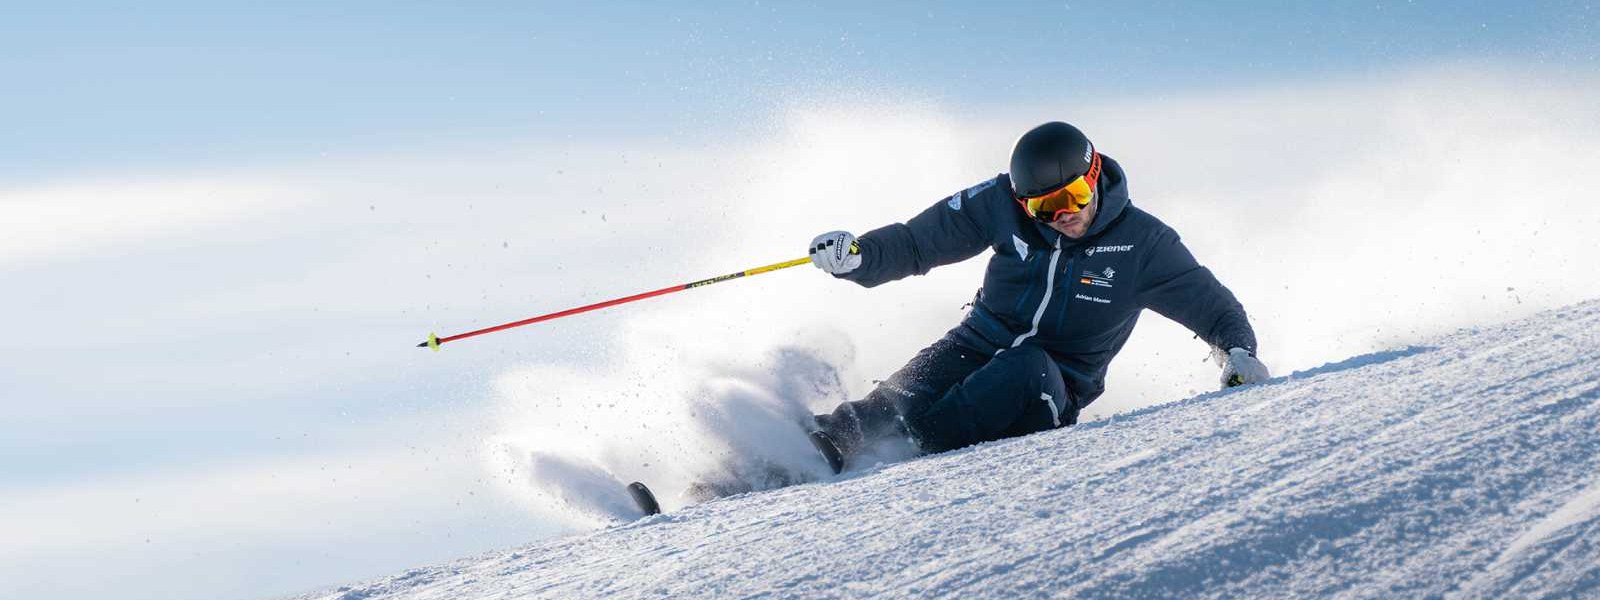 Skifahrer in dunklem Anzug in extremer Schräglage bei der Abfahrt